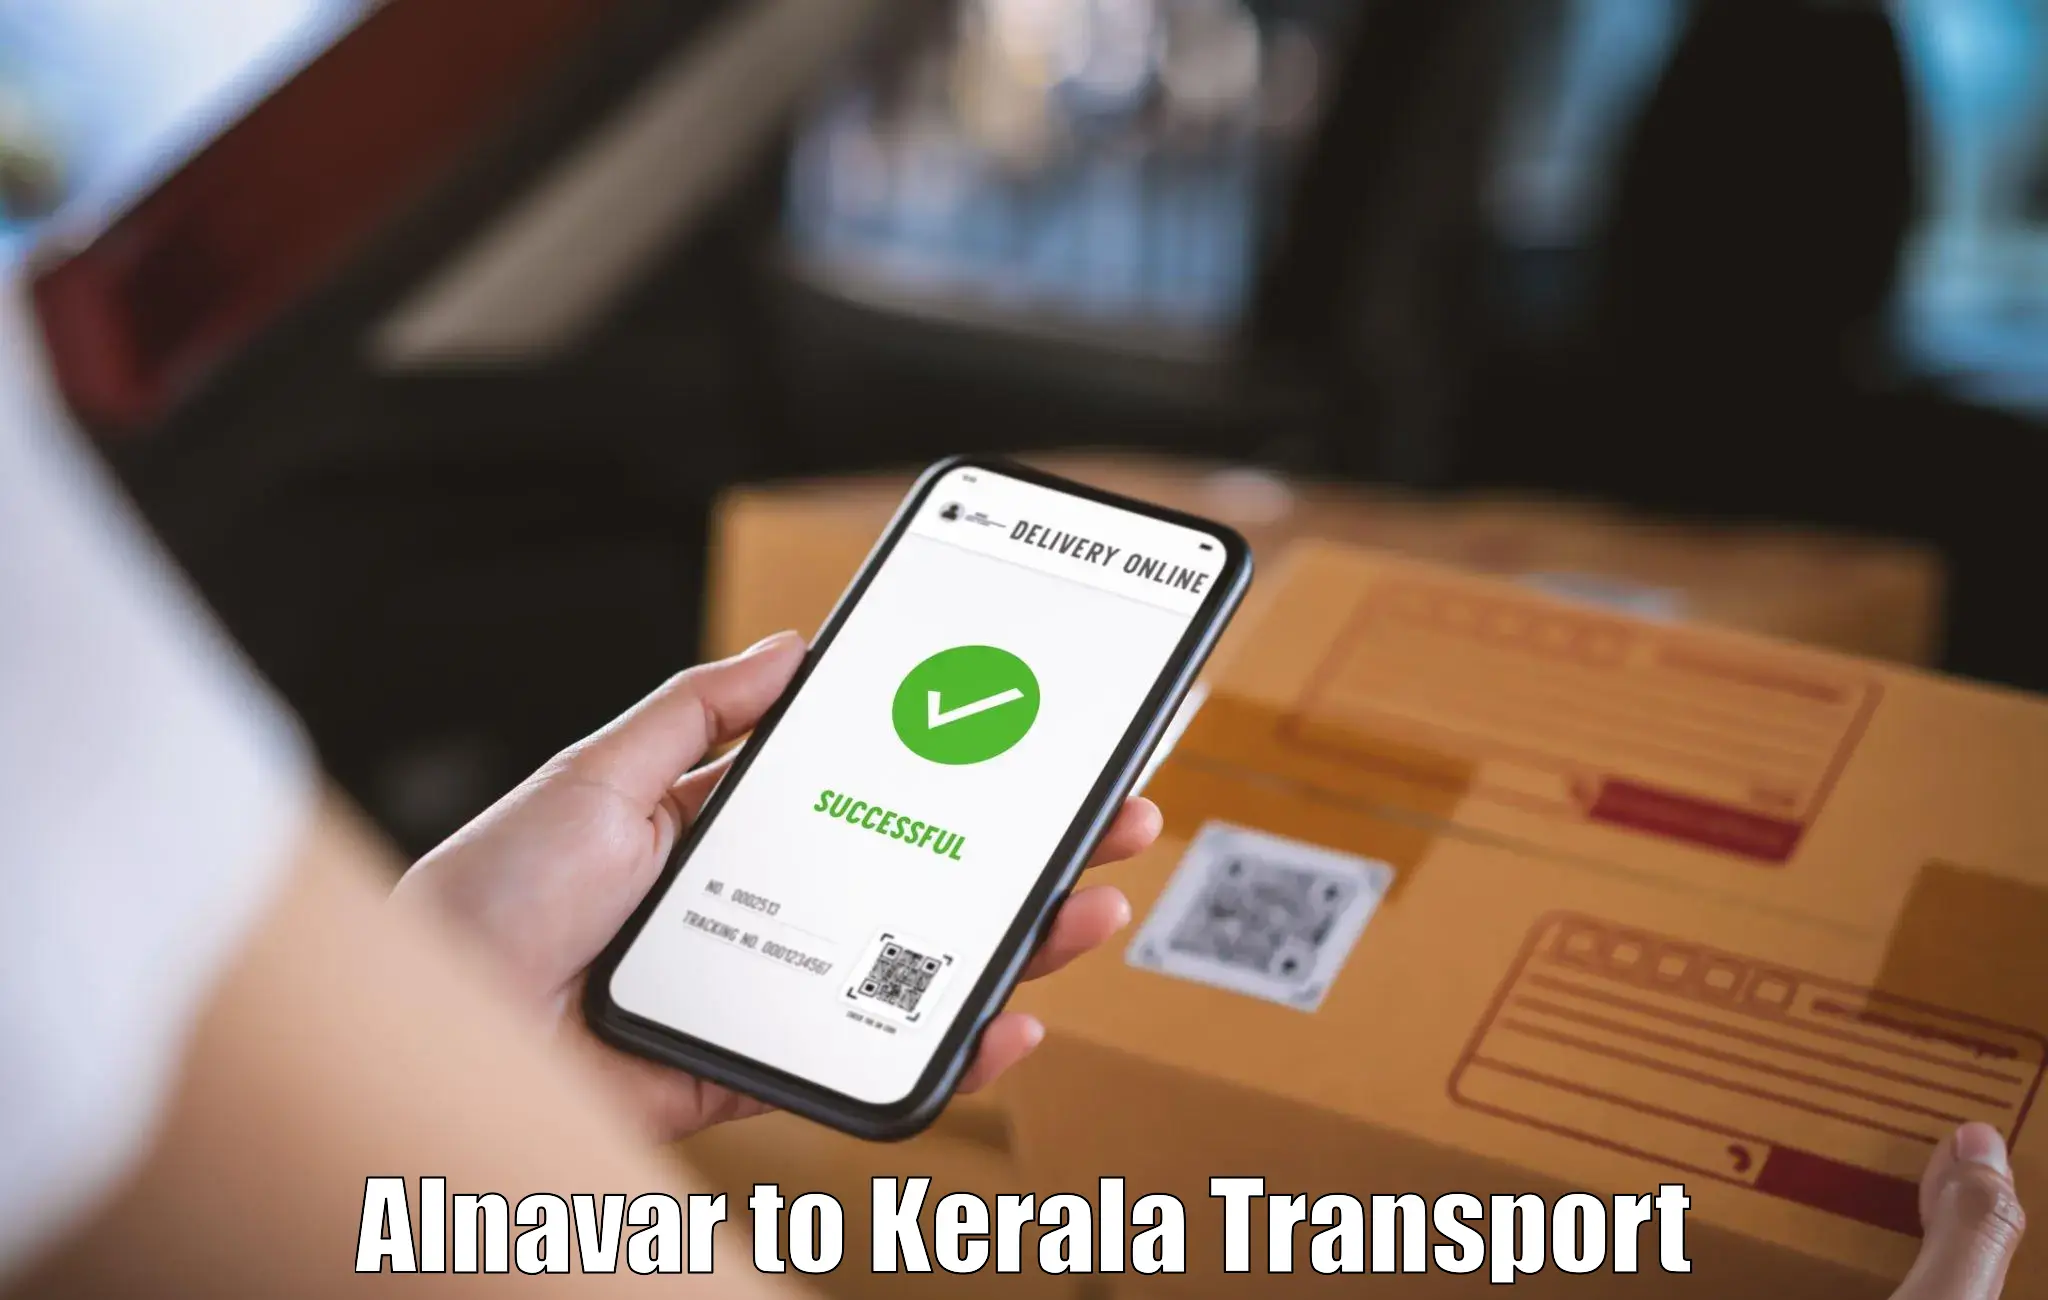 Goods transport services Alnavar to Cherthala